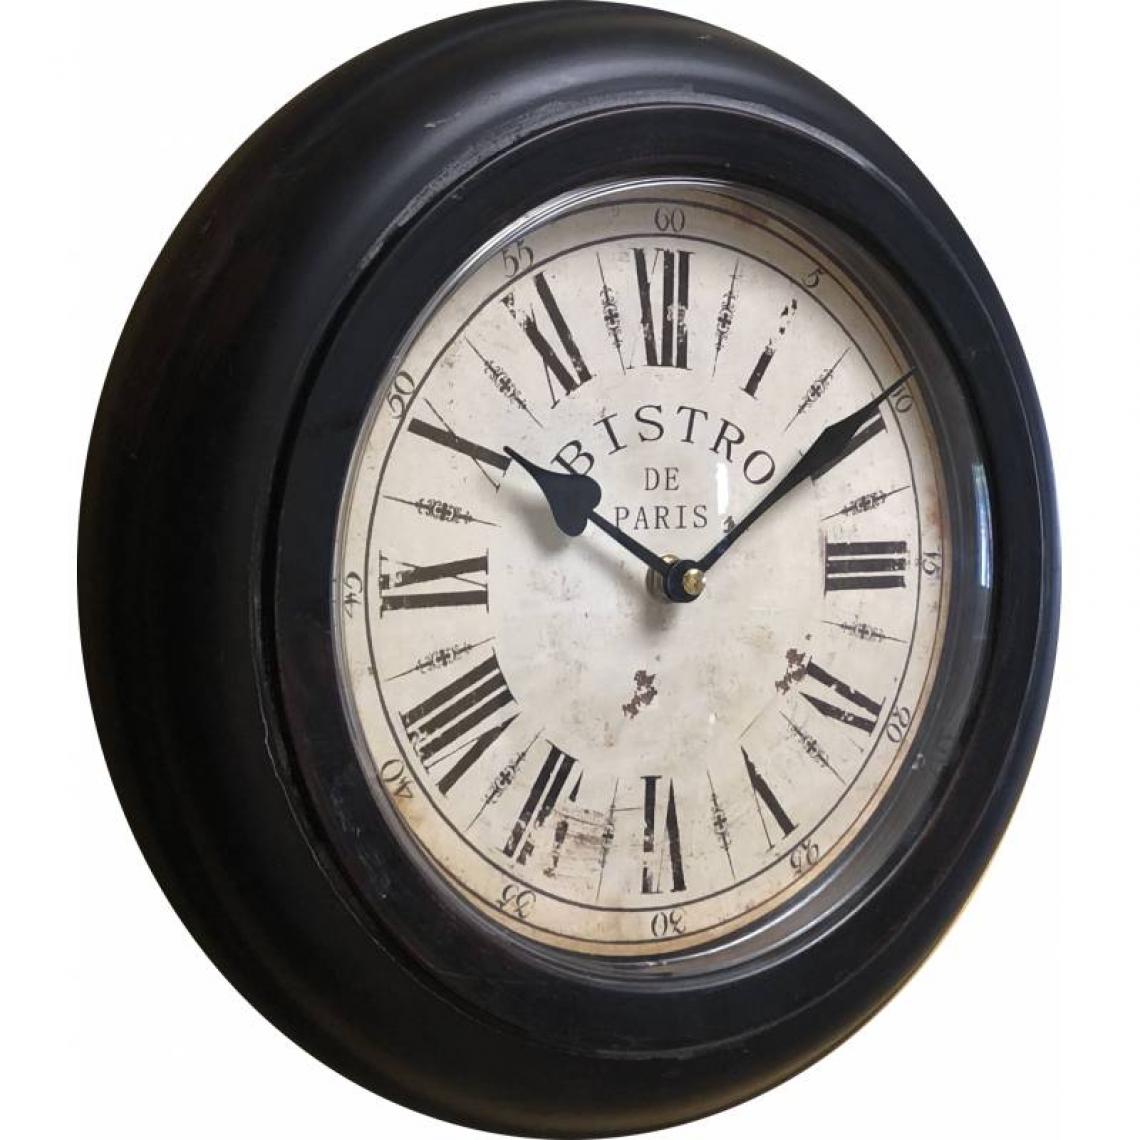 L'Héritier Du Temps - Horloge Murale en Métal avec Vitre en Plexiglass Pendule Bistro de Paris 4x32x32cm - Horloges, pendules